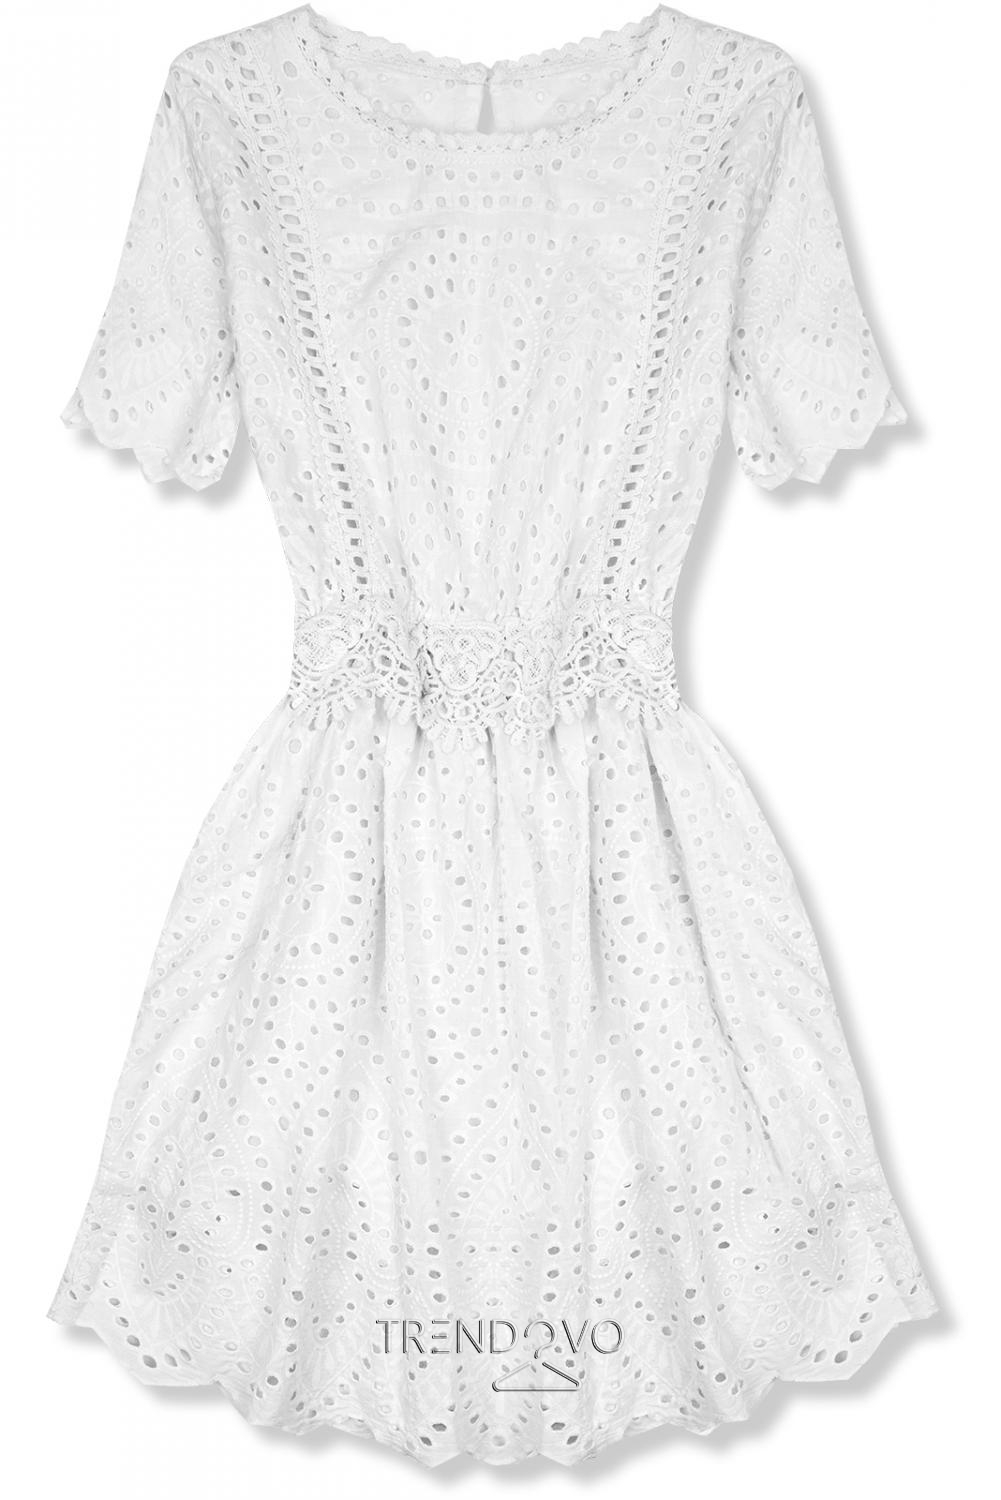 Bílé šaty s perforovanými výšivkami